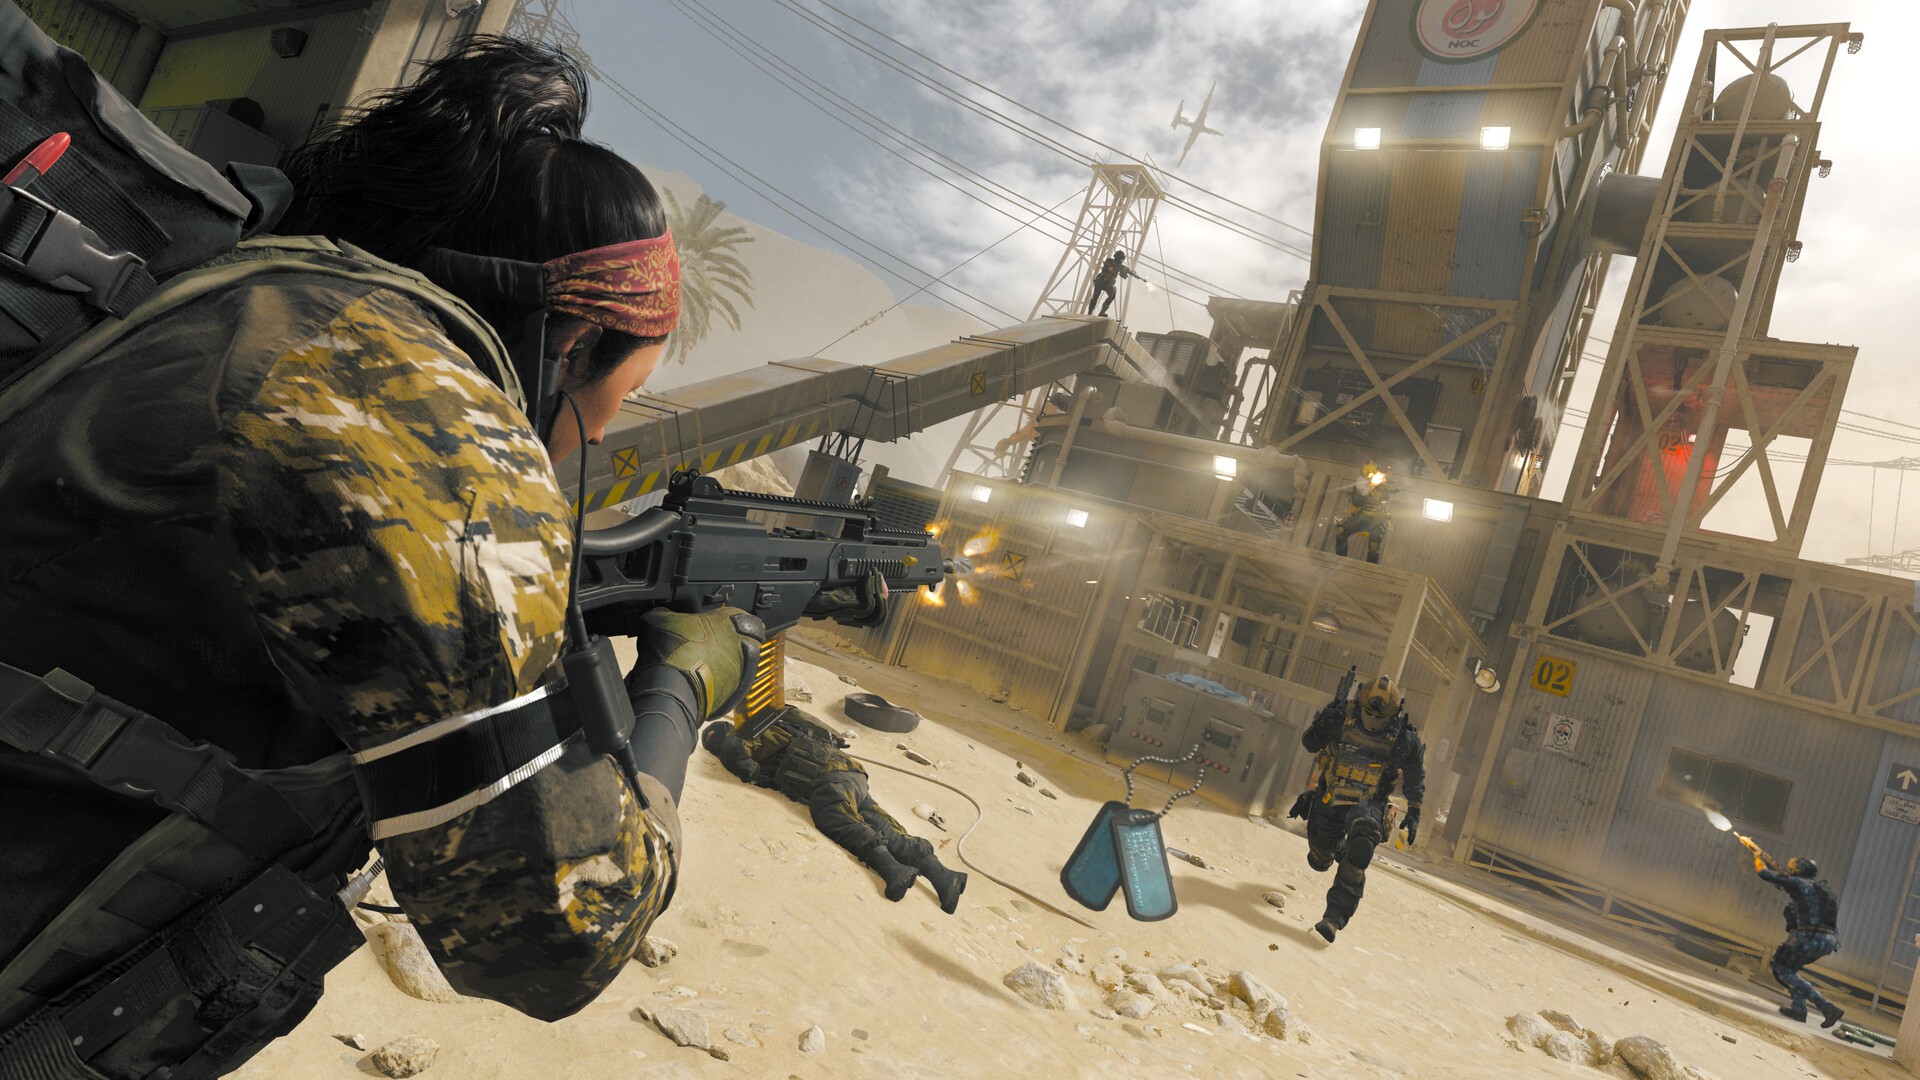 Buy Call of Duty: Modern Warfare III - Vault Edition (Xbox One